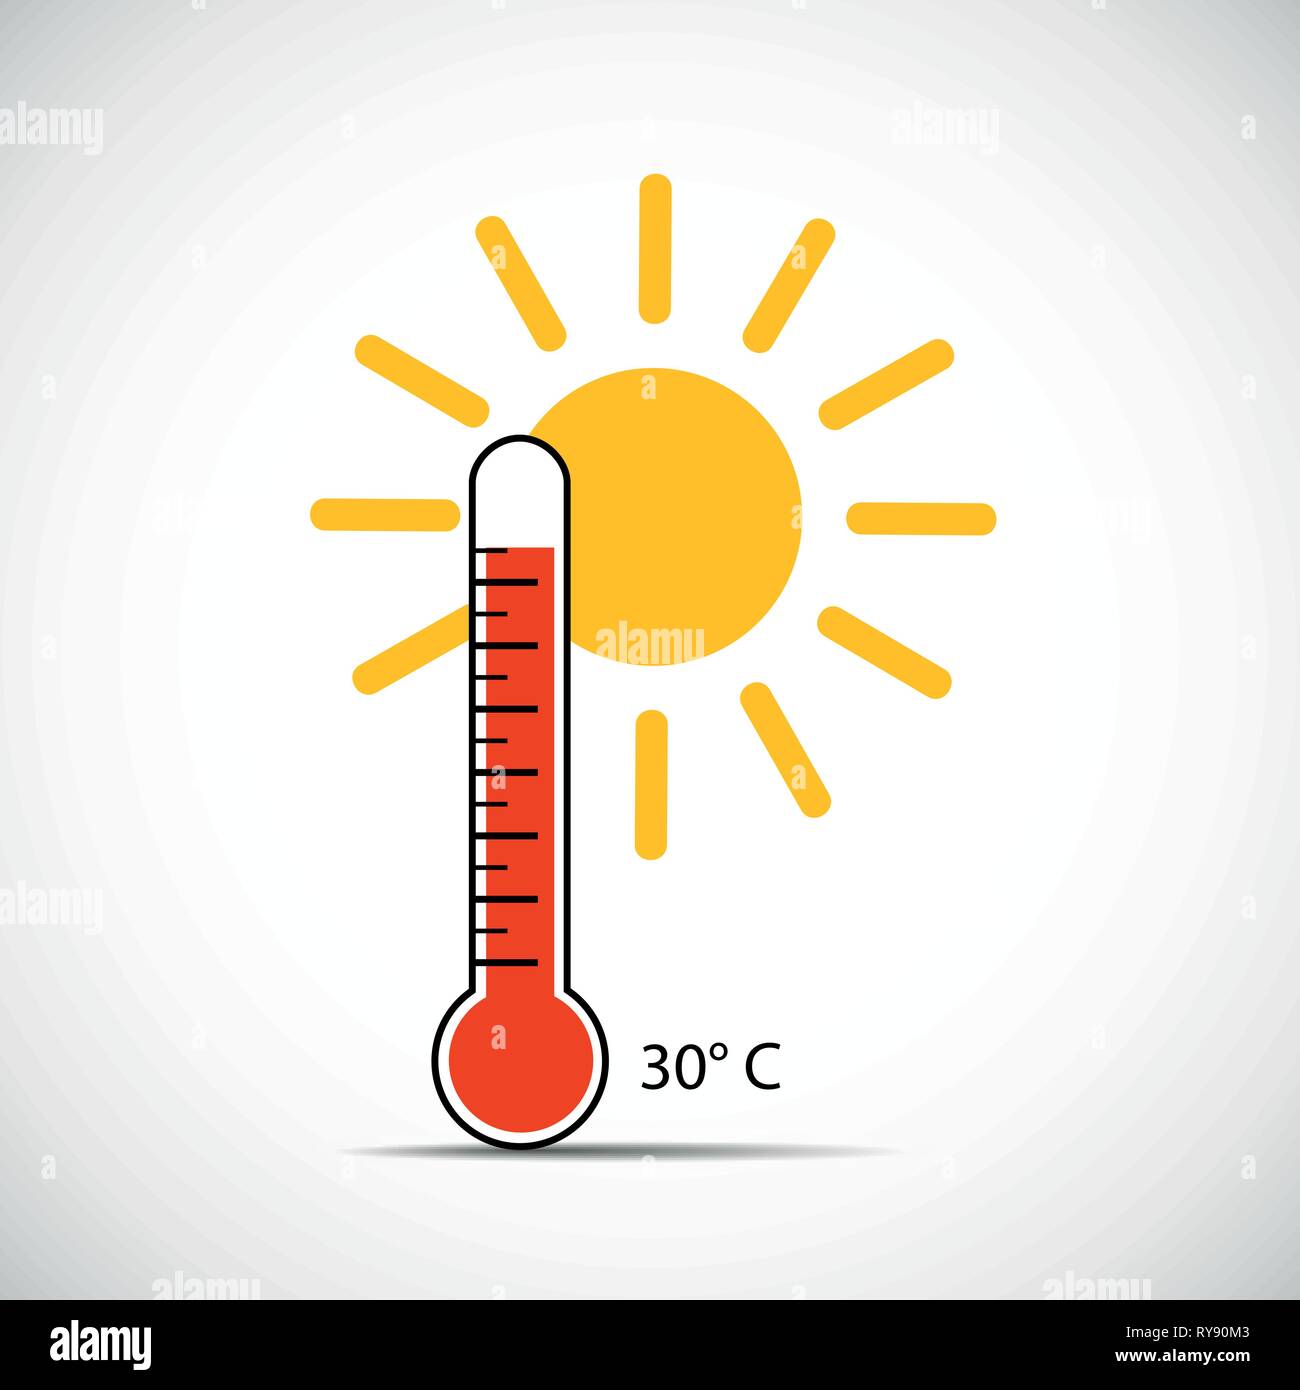 Das Symbol für Wärme Thermometer 30 Grad Sommer Wetter mit Sonnenschein Vektor-illustration EPS 10. Stock Vektor